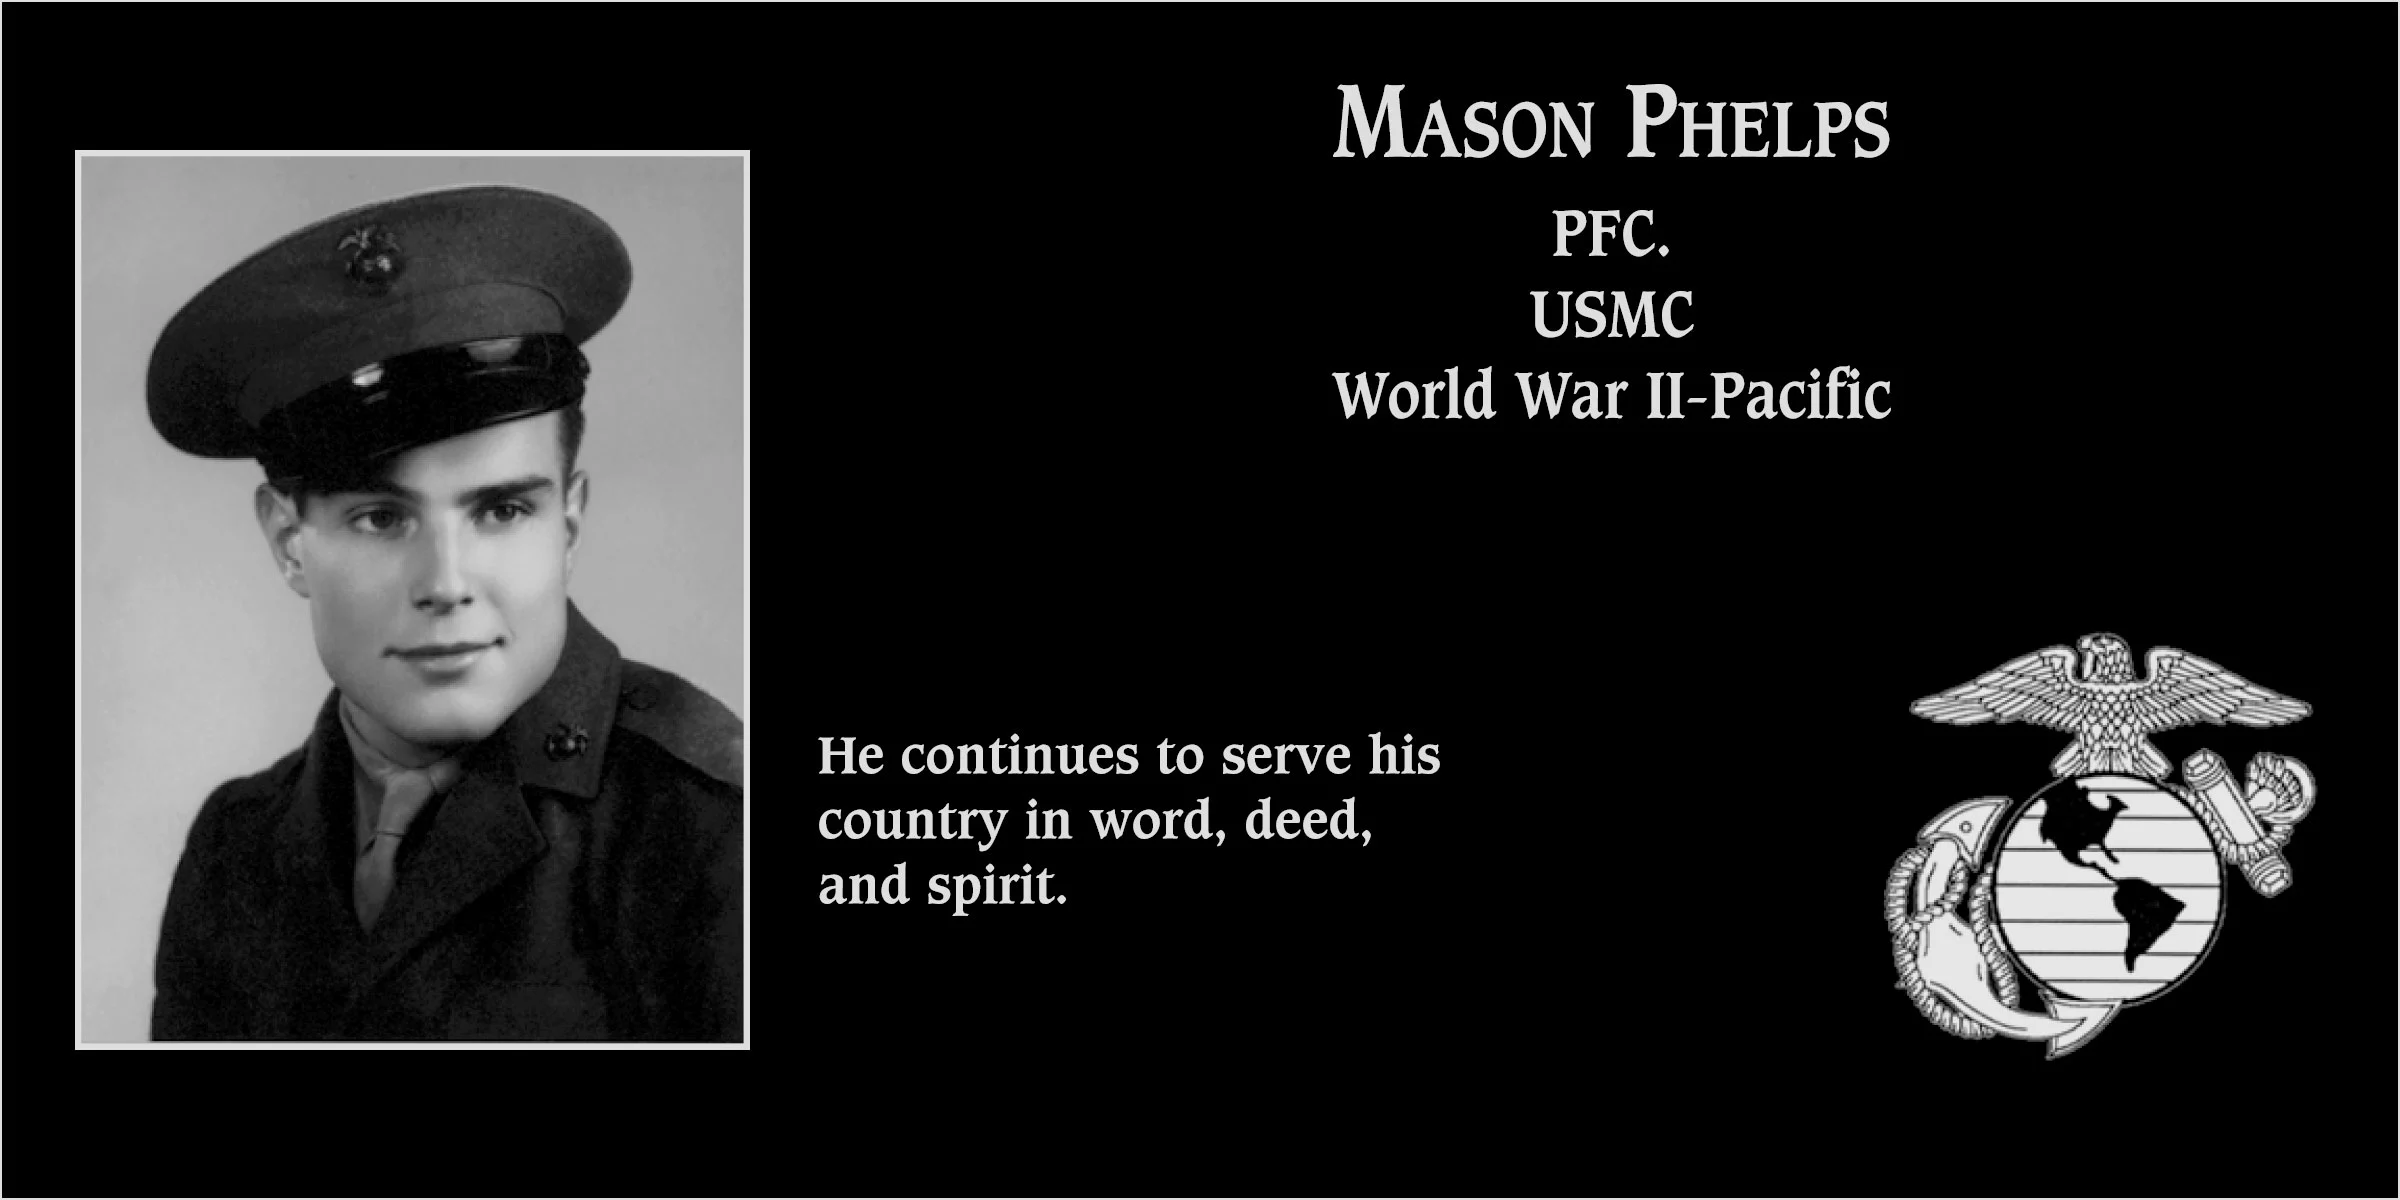 Mason Phelps